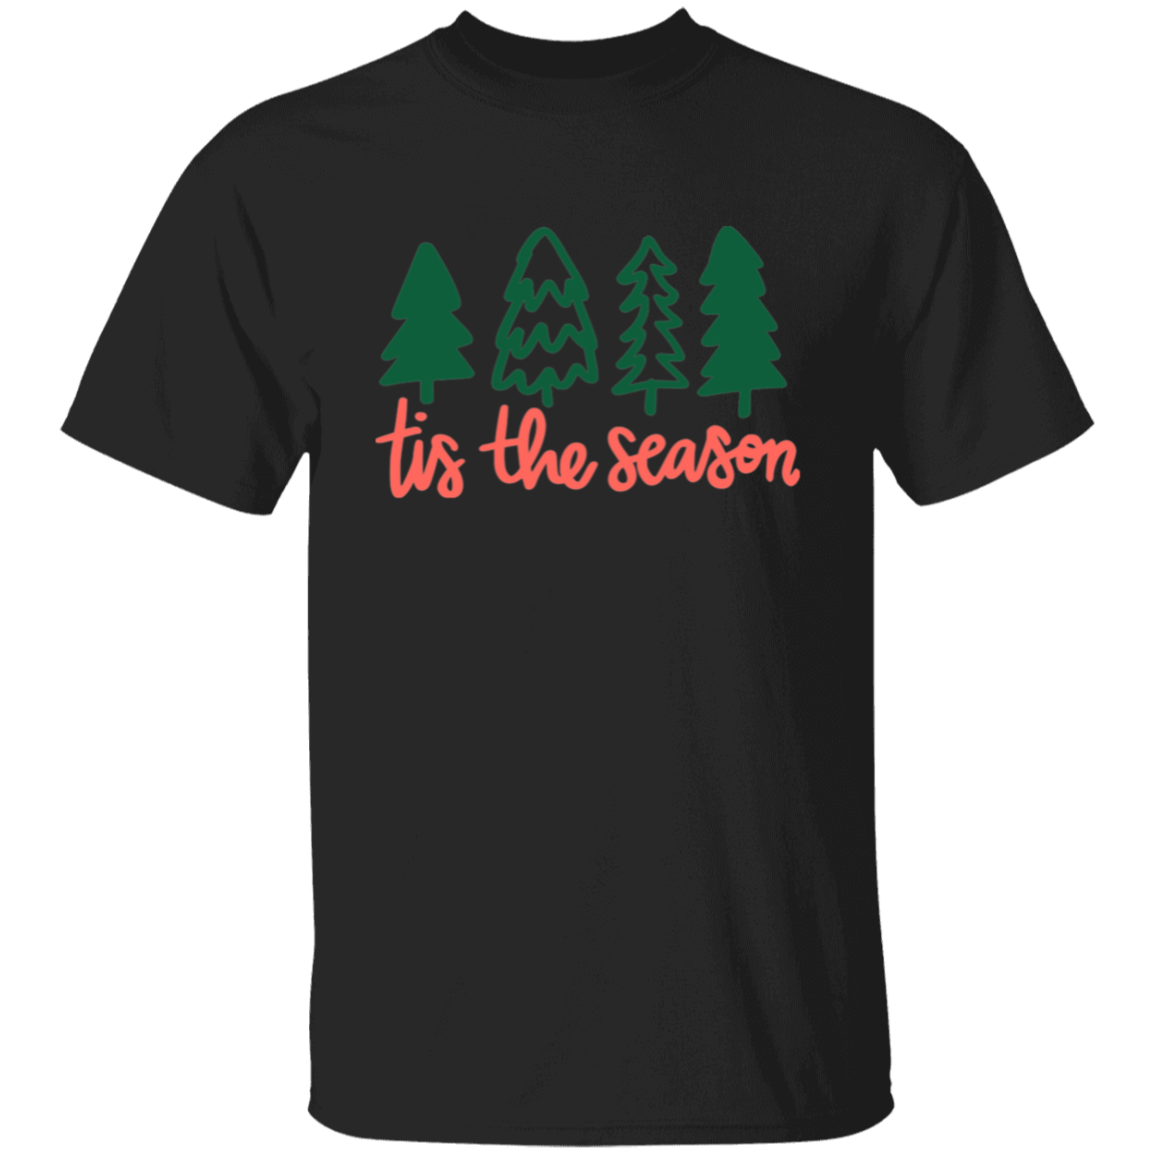 Tis the Season 5.3 oz. T-Shirt